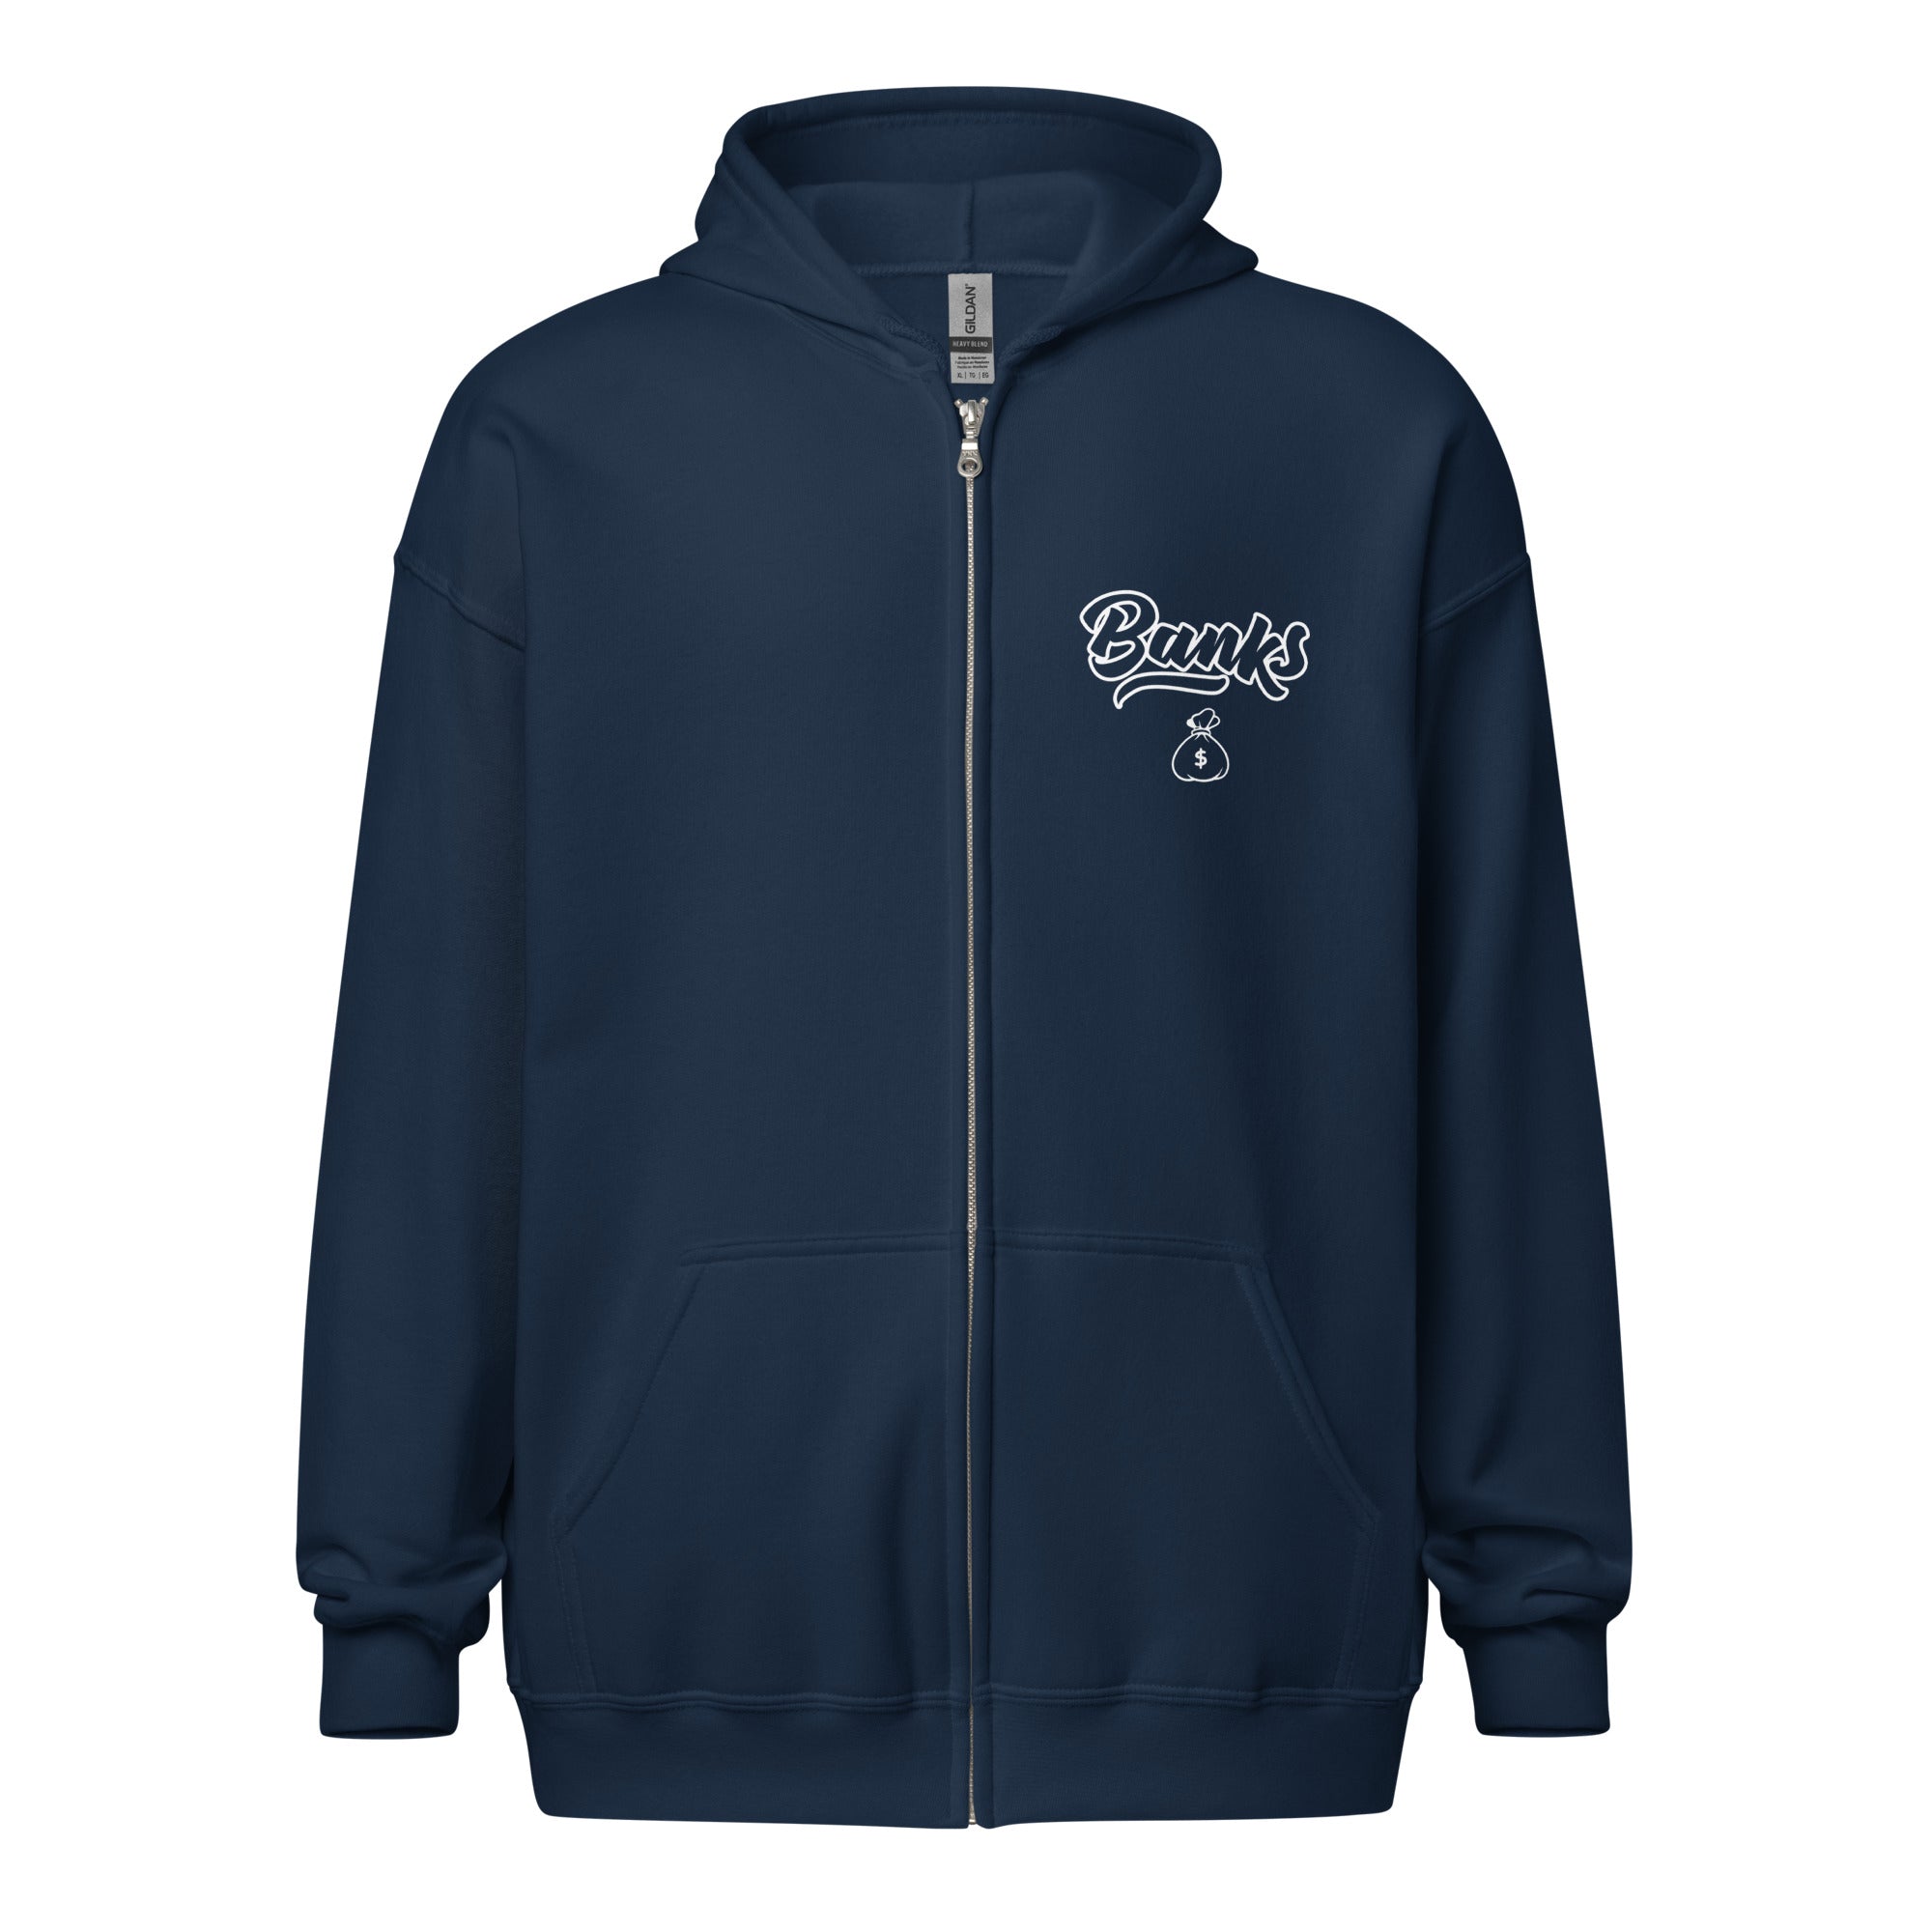 Banks 1433 - heavy blend zip hoodie